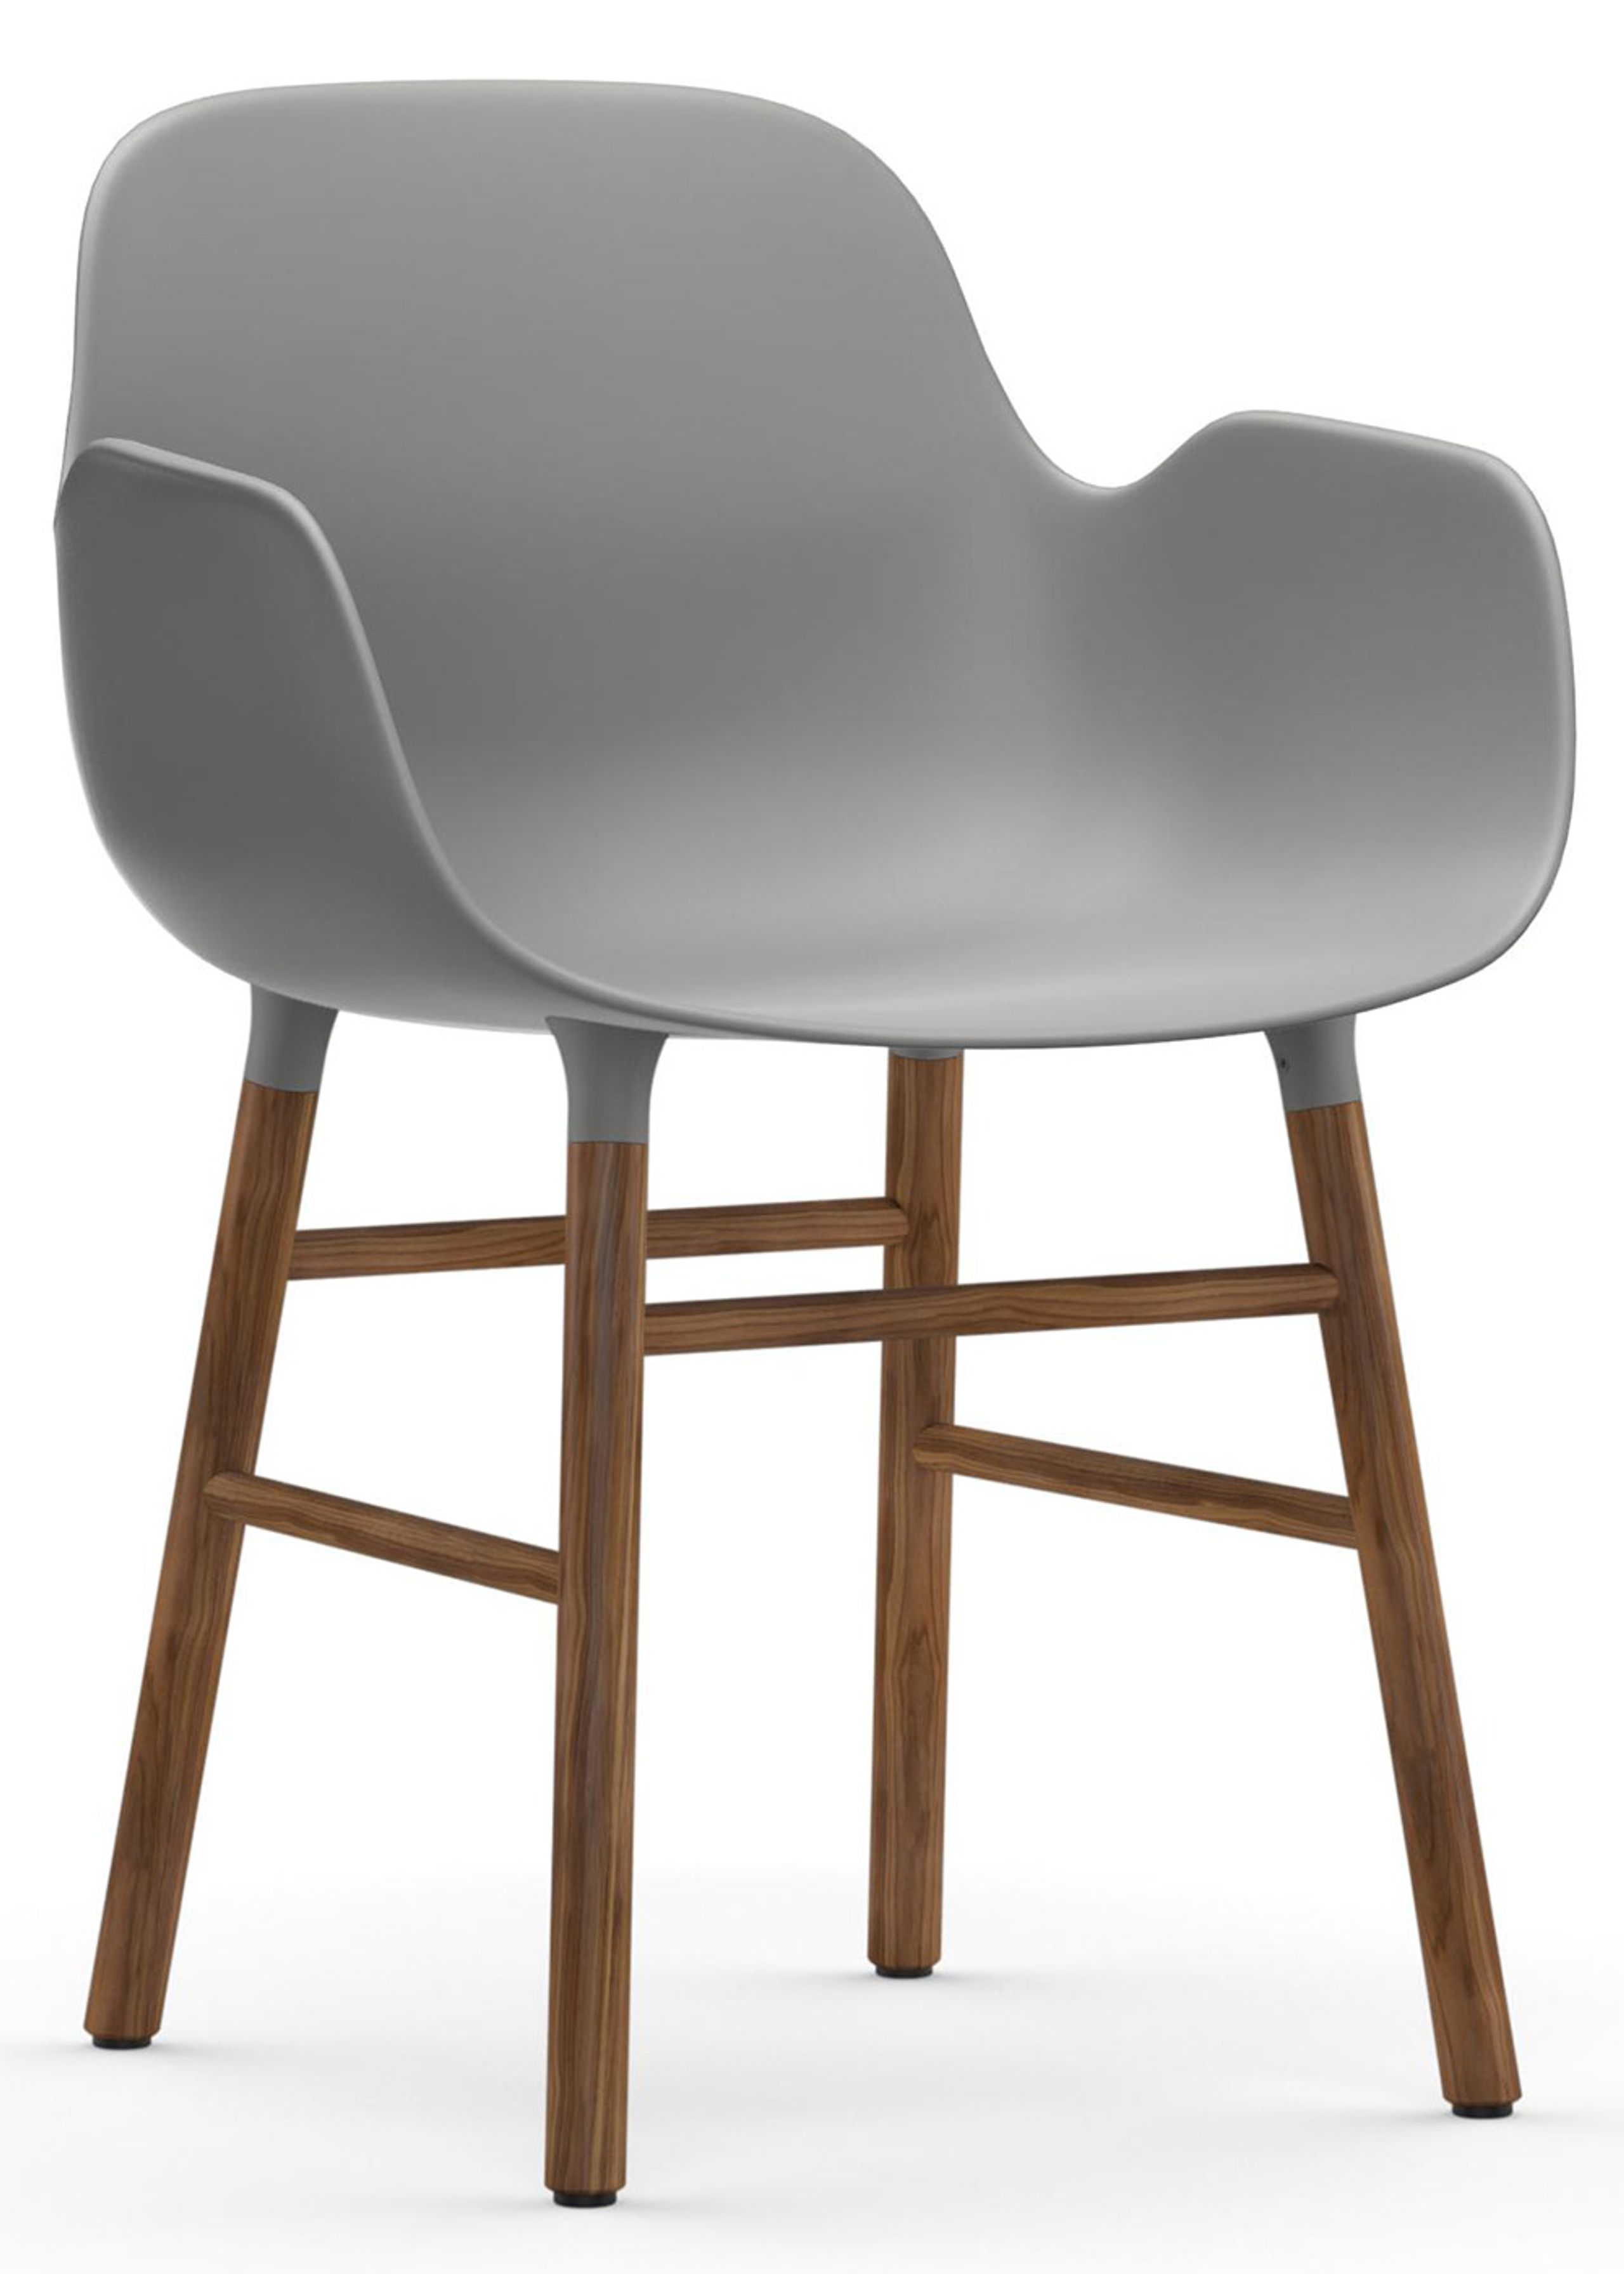 Normann Copenhagen - Fauteuil - Form Armchair - Wood - Walnut / Grey